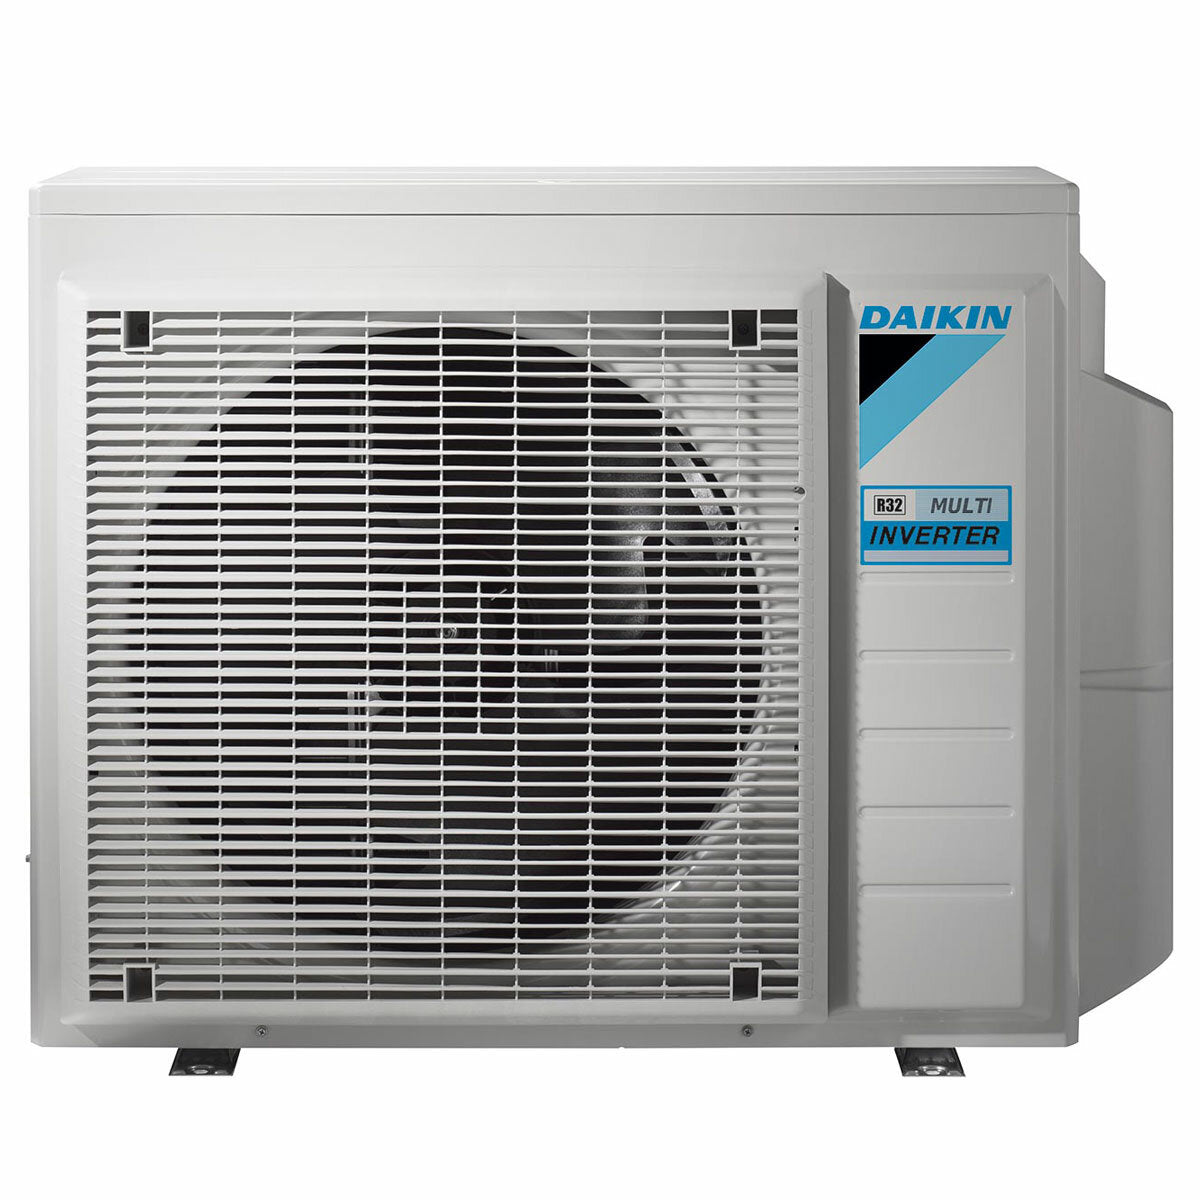 Daikin Emura 3 air conditioner penta split 9000+9000+9000+9000+12000 BTU inverter A+ wifi outdoor unit 7.8 kW Silver